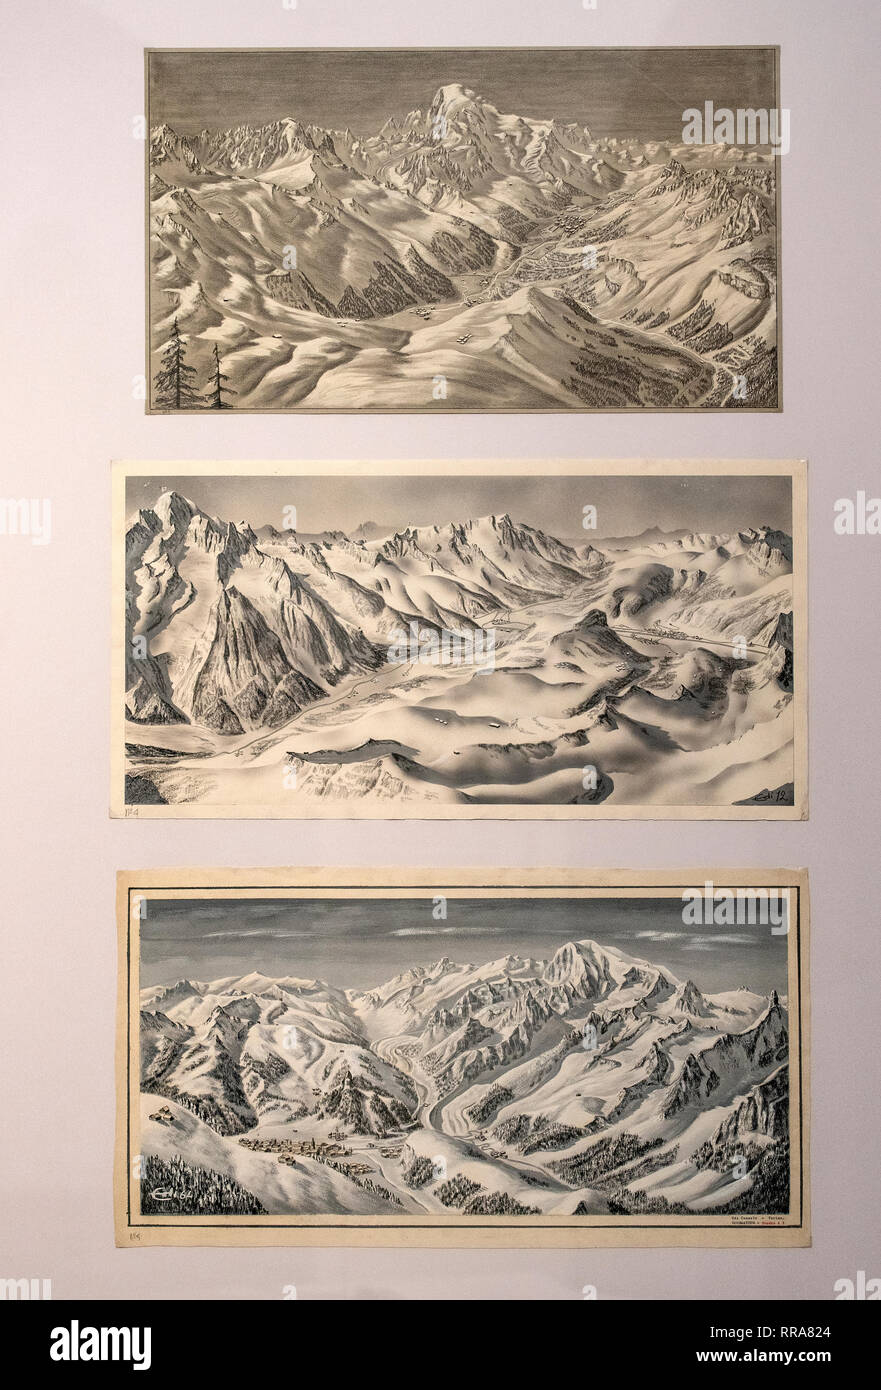 Turin Monte dei Cappuccini Musée de la montagne Exposition sur l'Edi Consolo - 3 cartes - de la partie supérieure de la vallée de Chamonix - Mont Blanc 1964 - à partir de la colle d'Arp 1962 - Courmayeur et Mont Blanc 1964 Banque D'Images